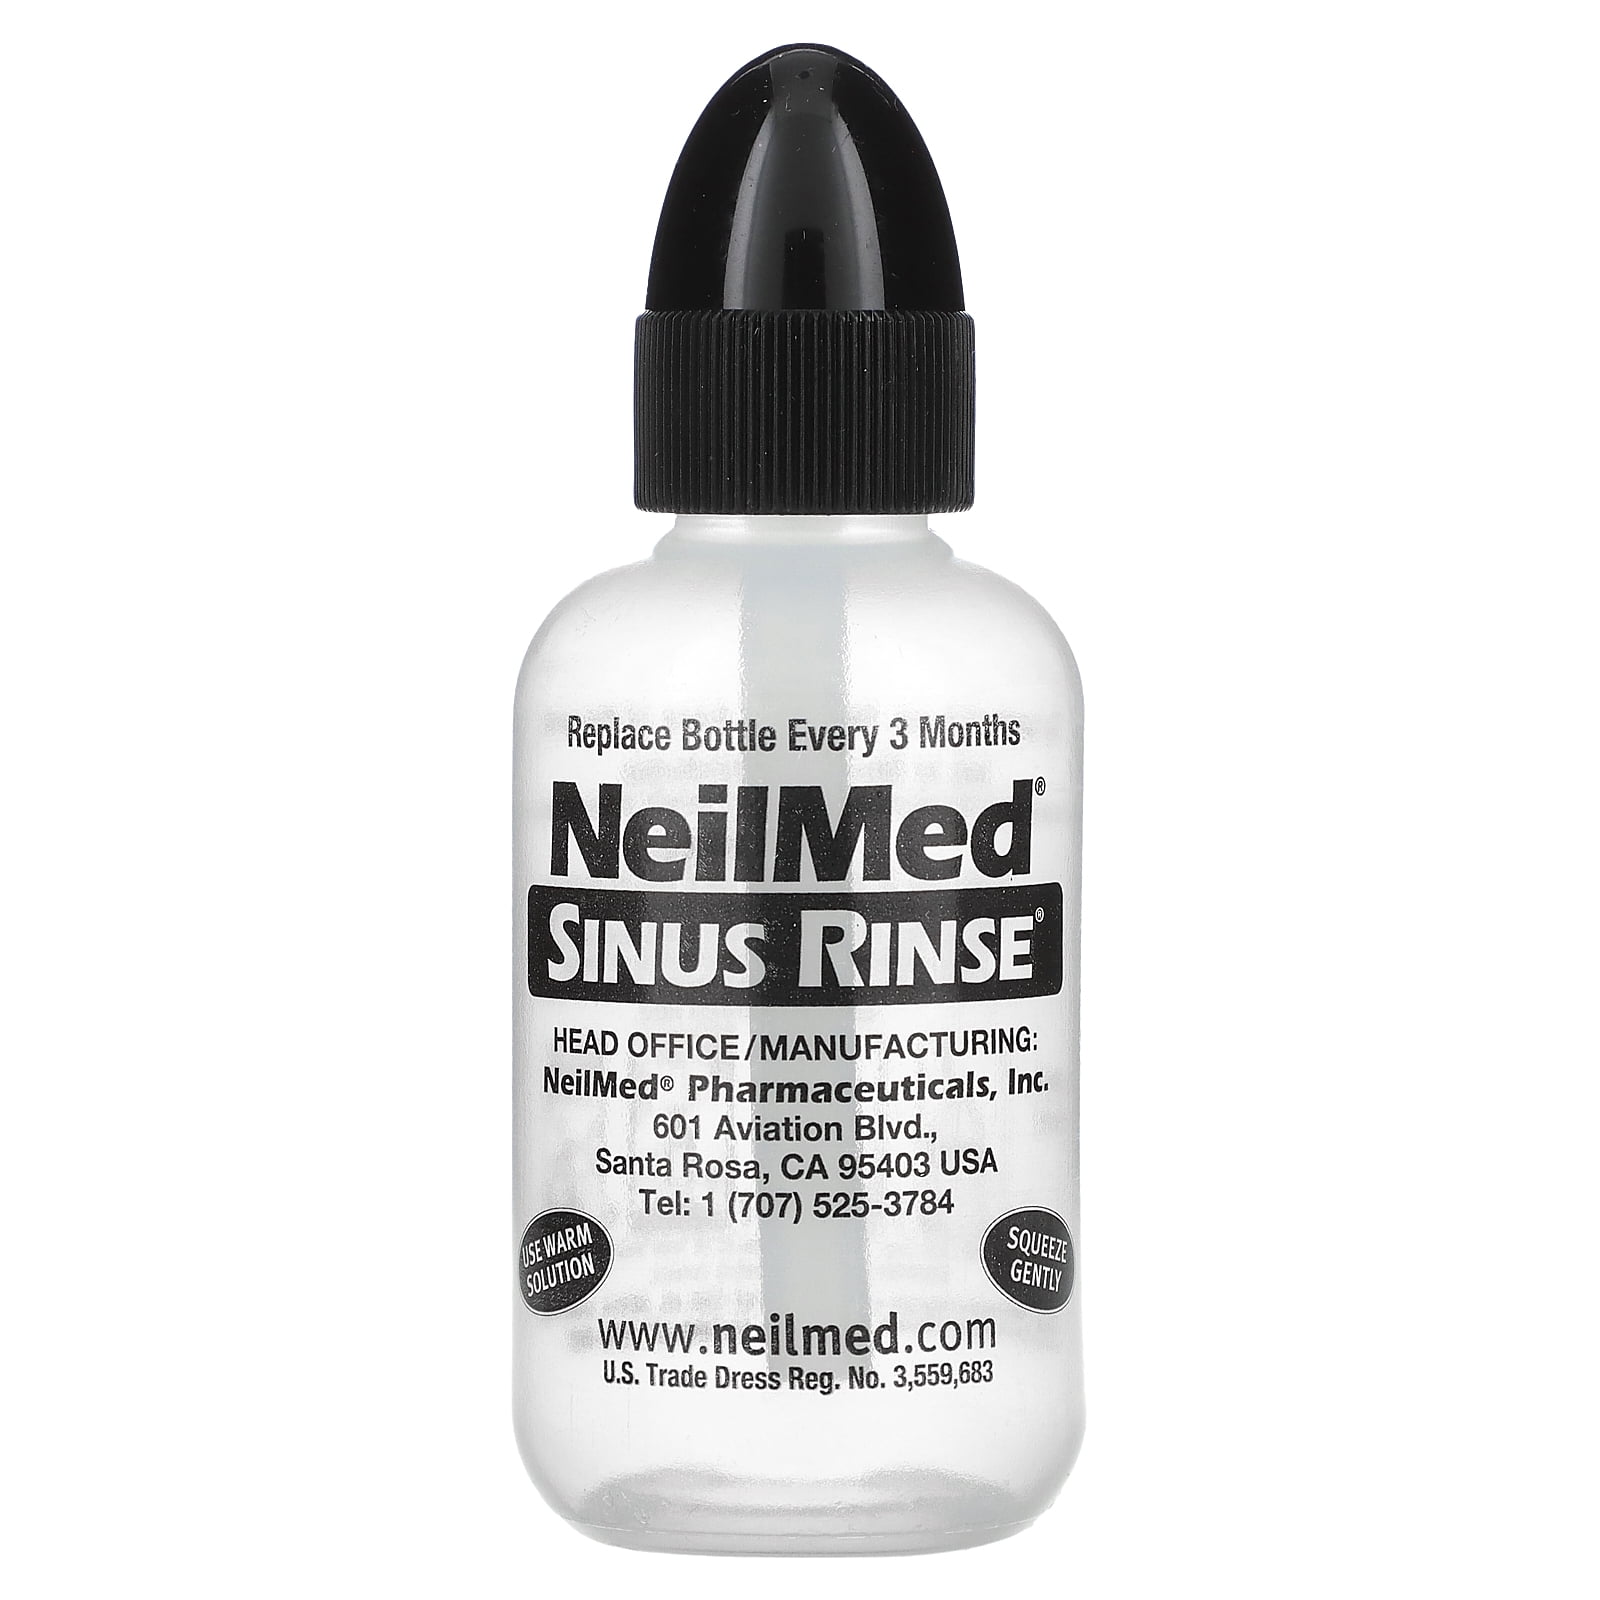 NEILMED SINUS RINSE Starter Kit 8 oz bottle & 1 premixed packet Exp 09-26  (F25)